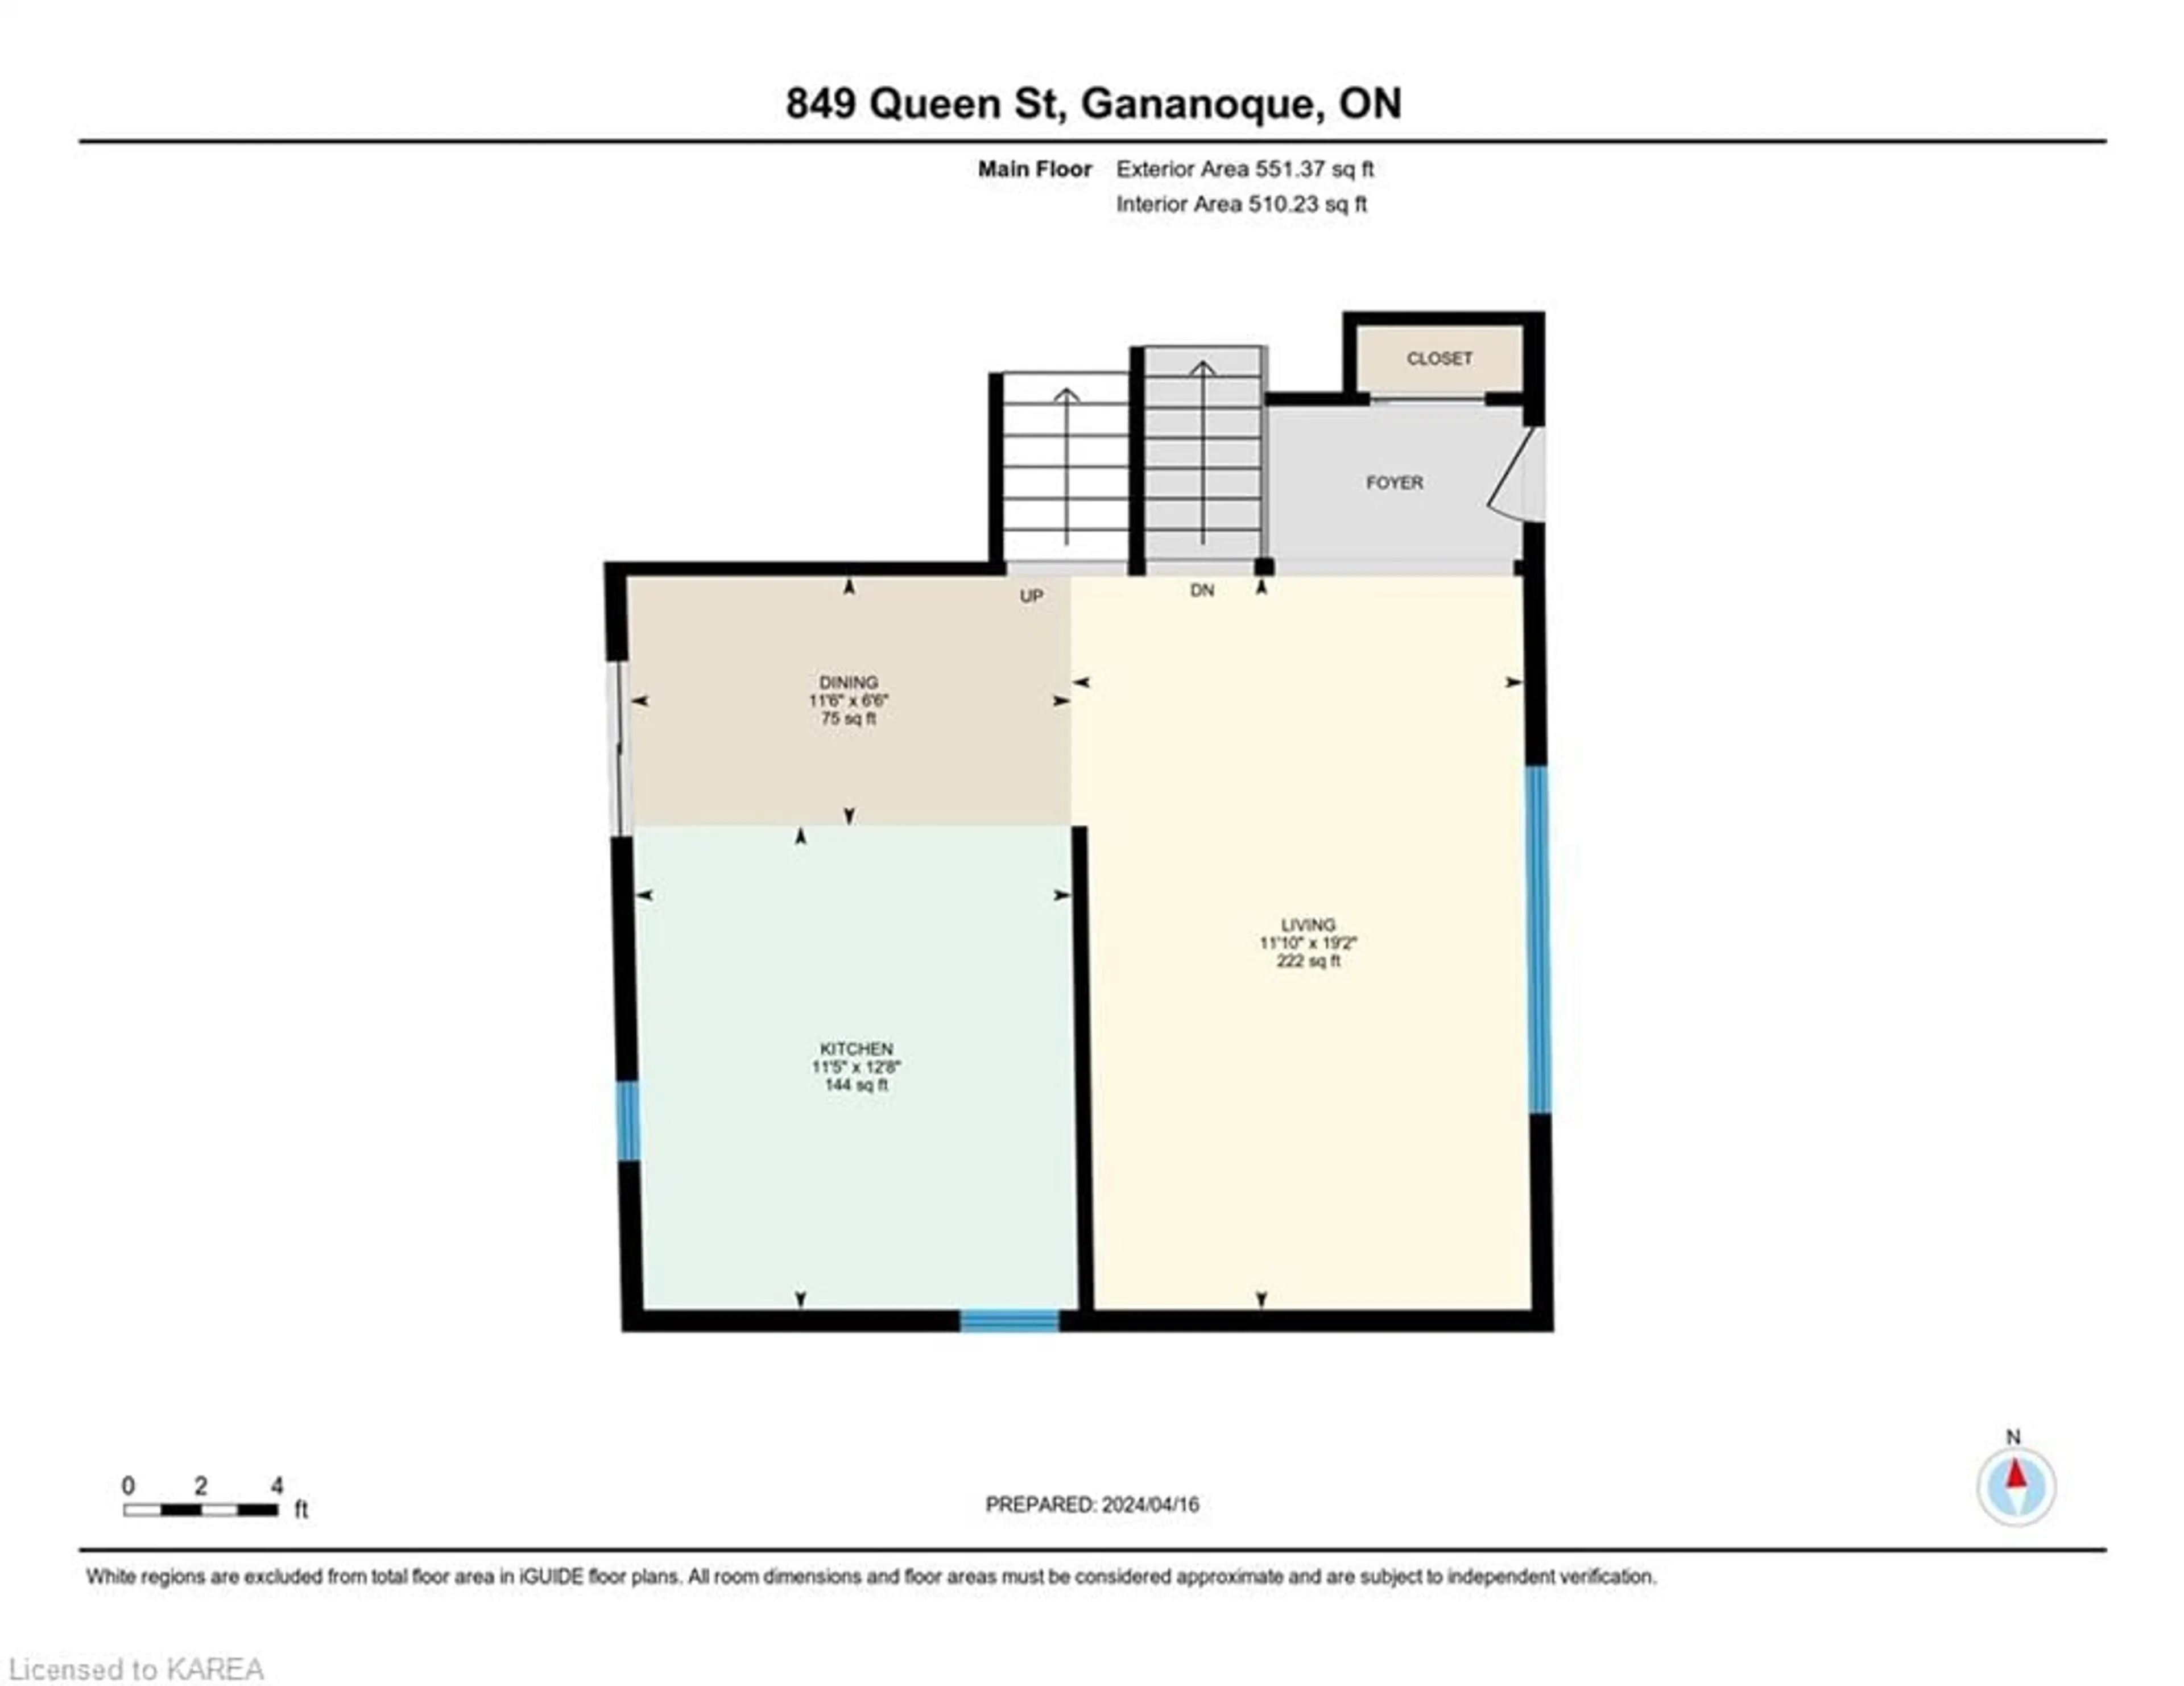 Floor plan for 849 Queen St, Gananoque Ontario K7G 2B5